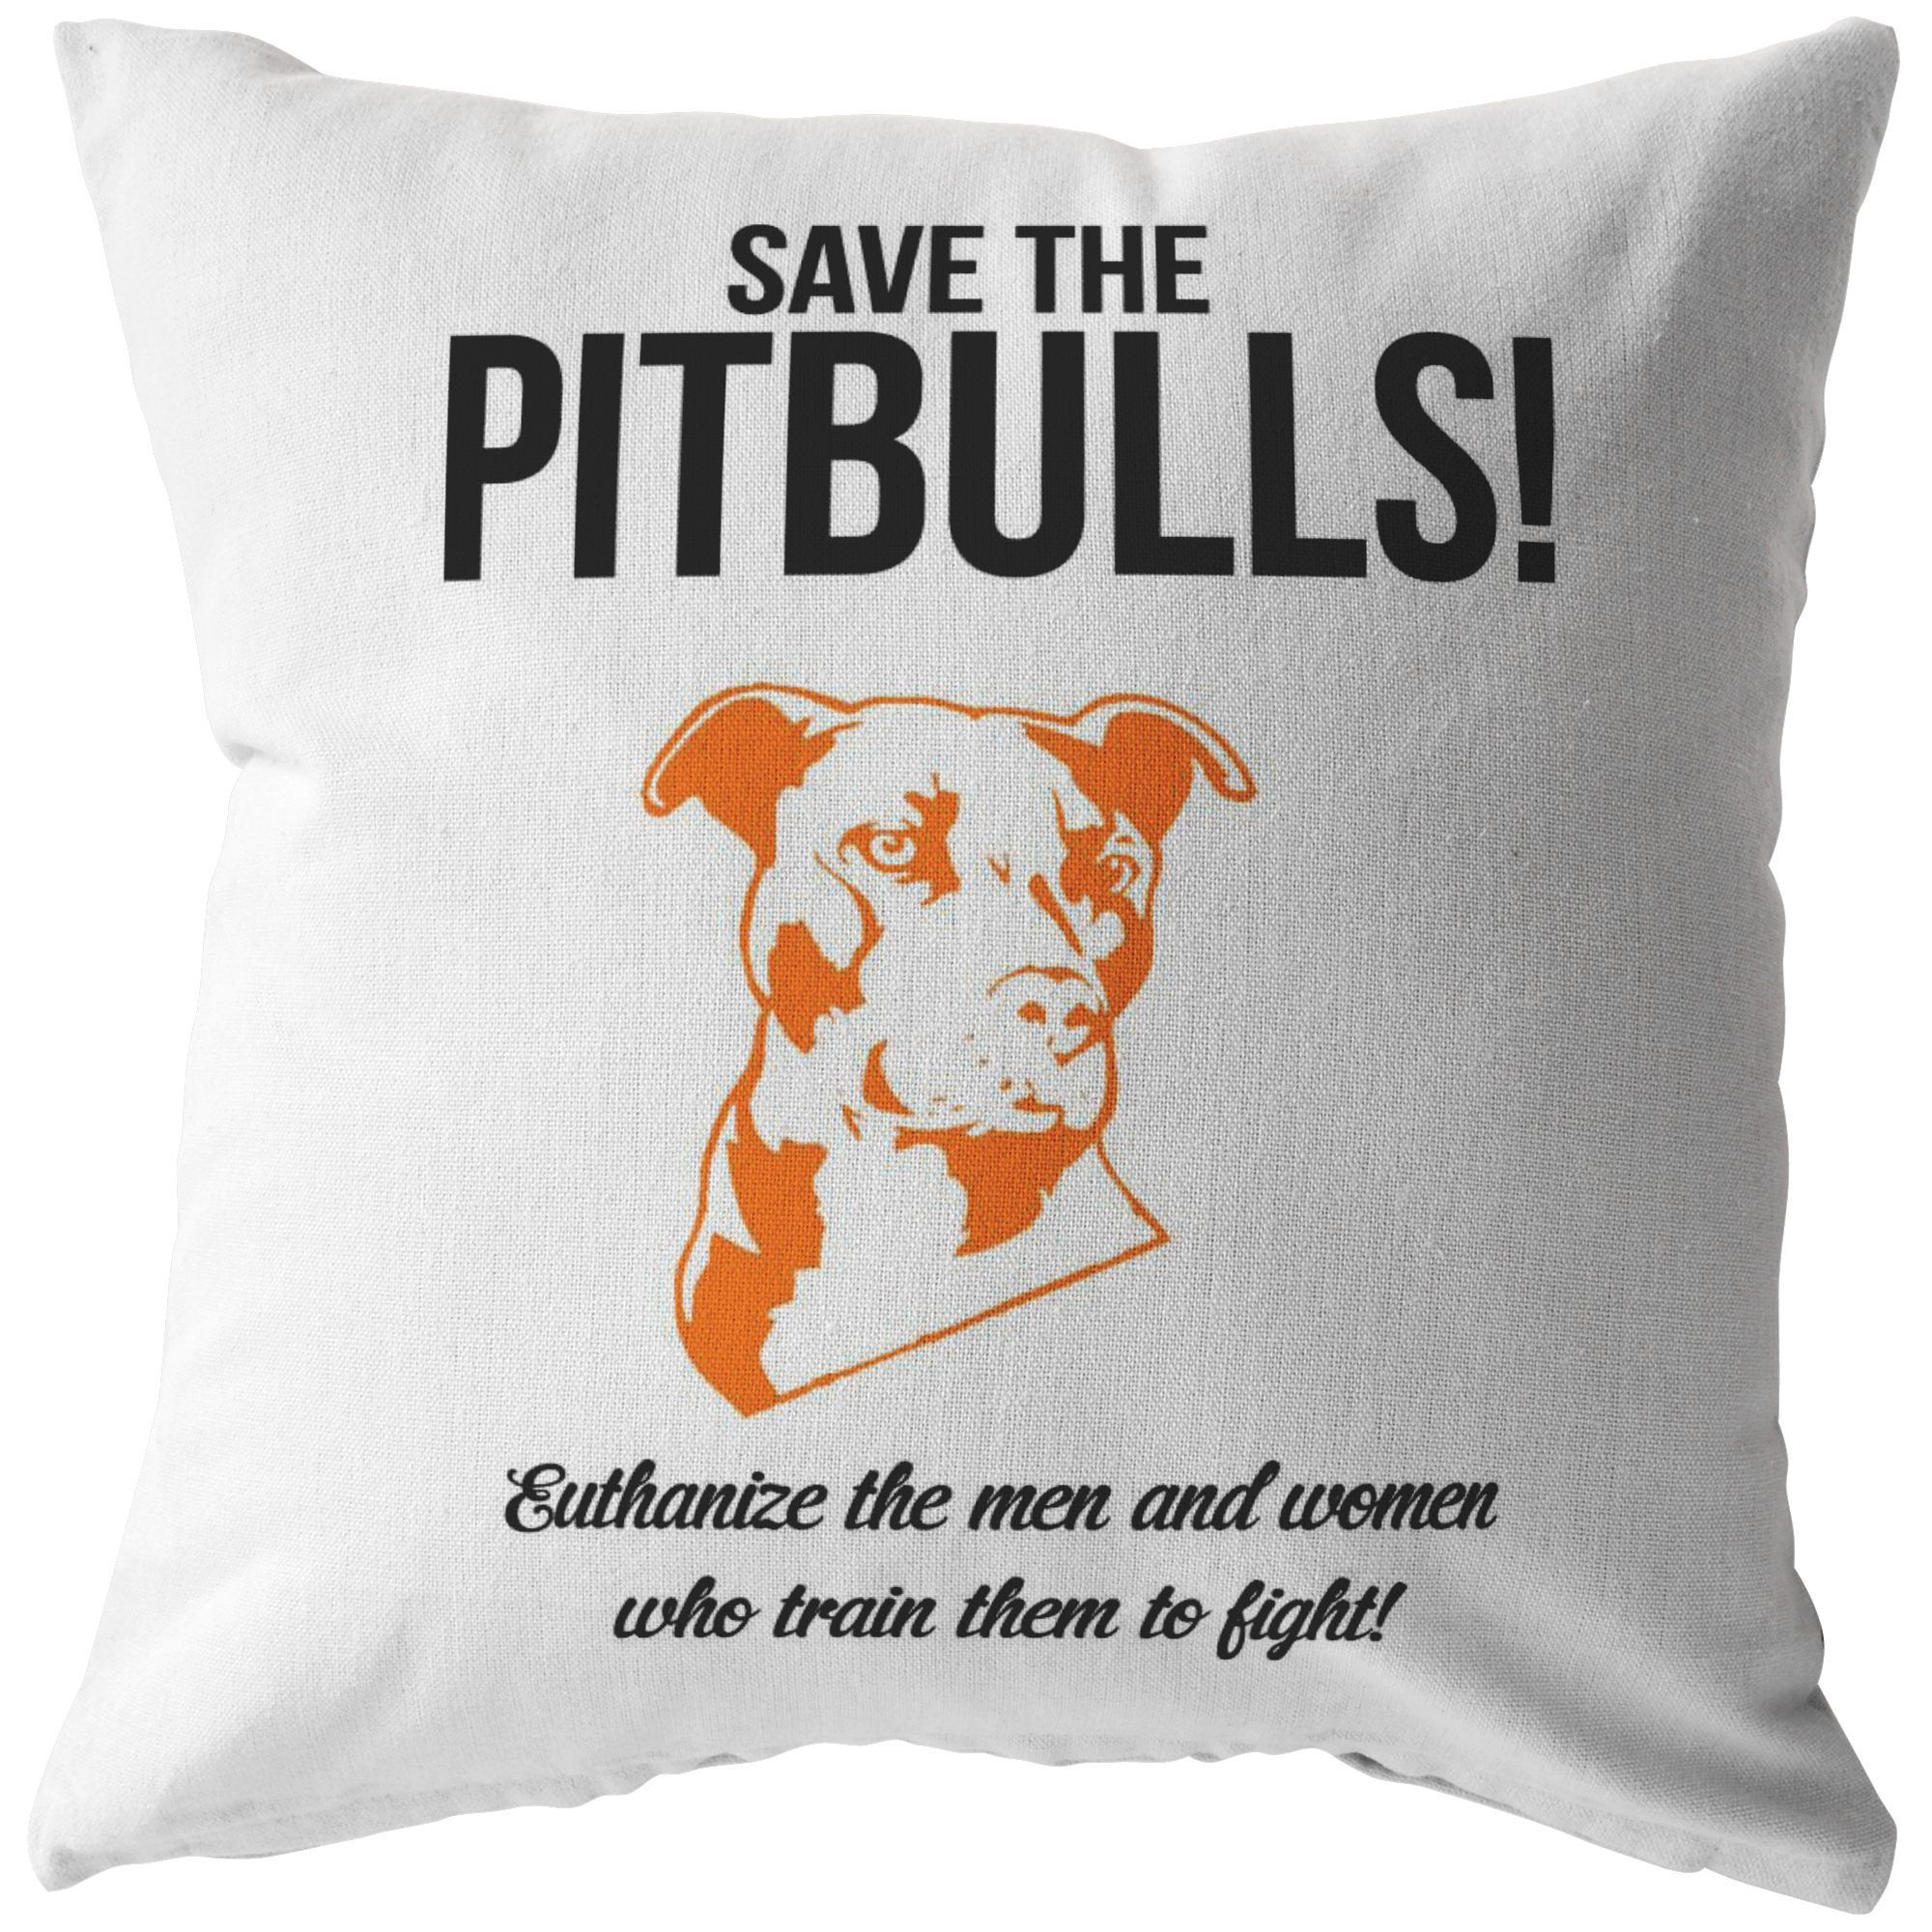 SAVE THE PITBULLS - Pillow